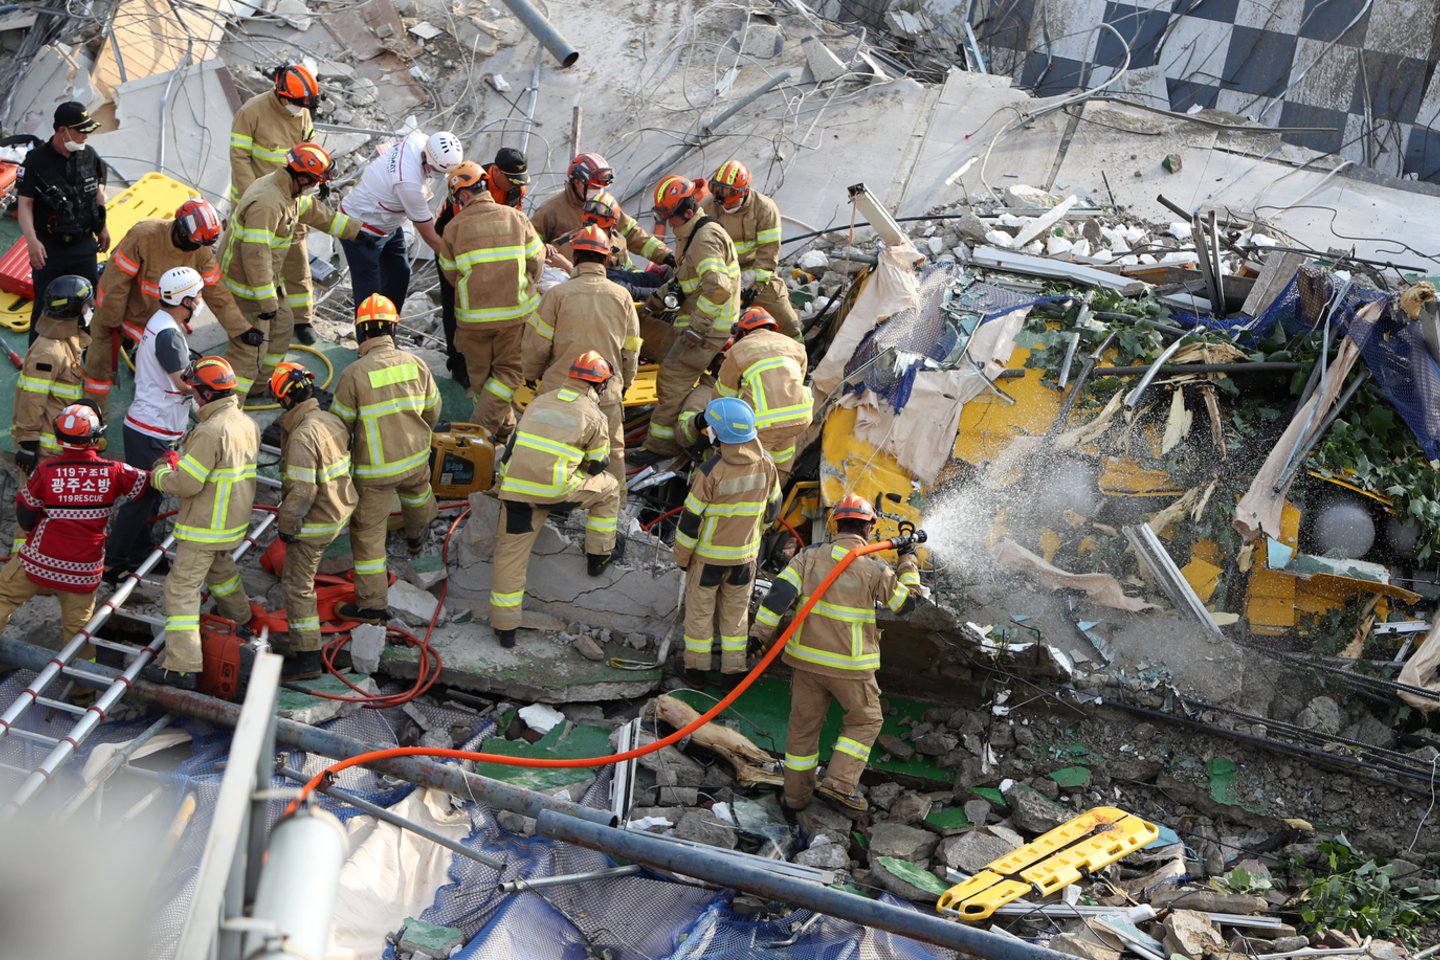  Pietų Korėjoje sugriuvus pastatui sužeisti aštuoni žmonės.  <br> AP/Scanpix nuotr.